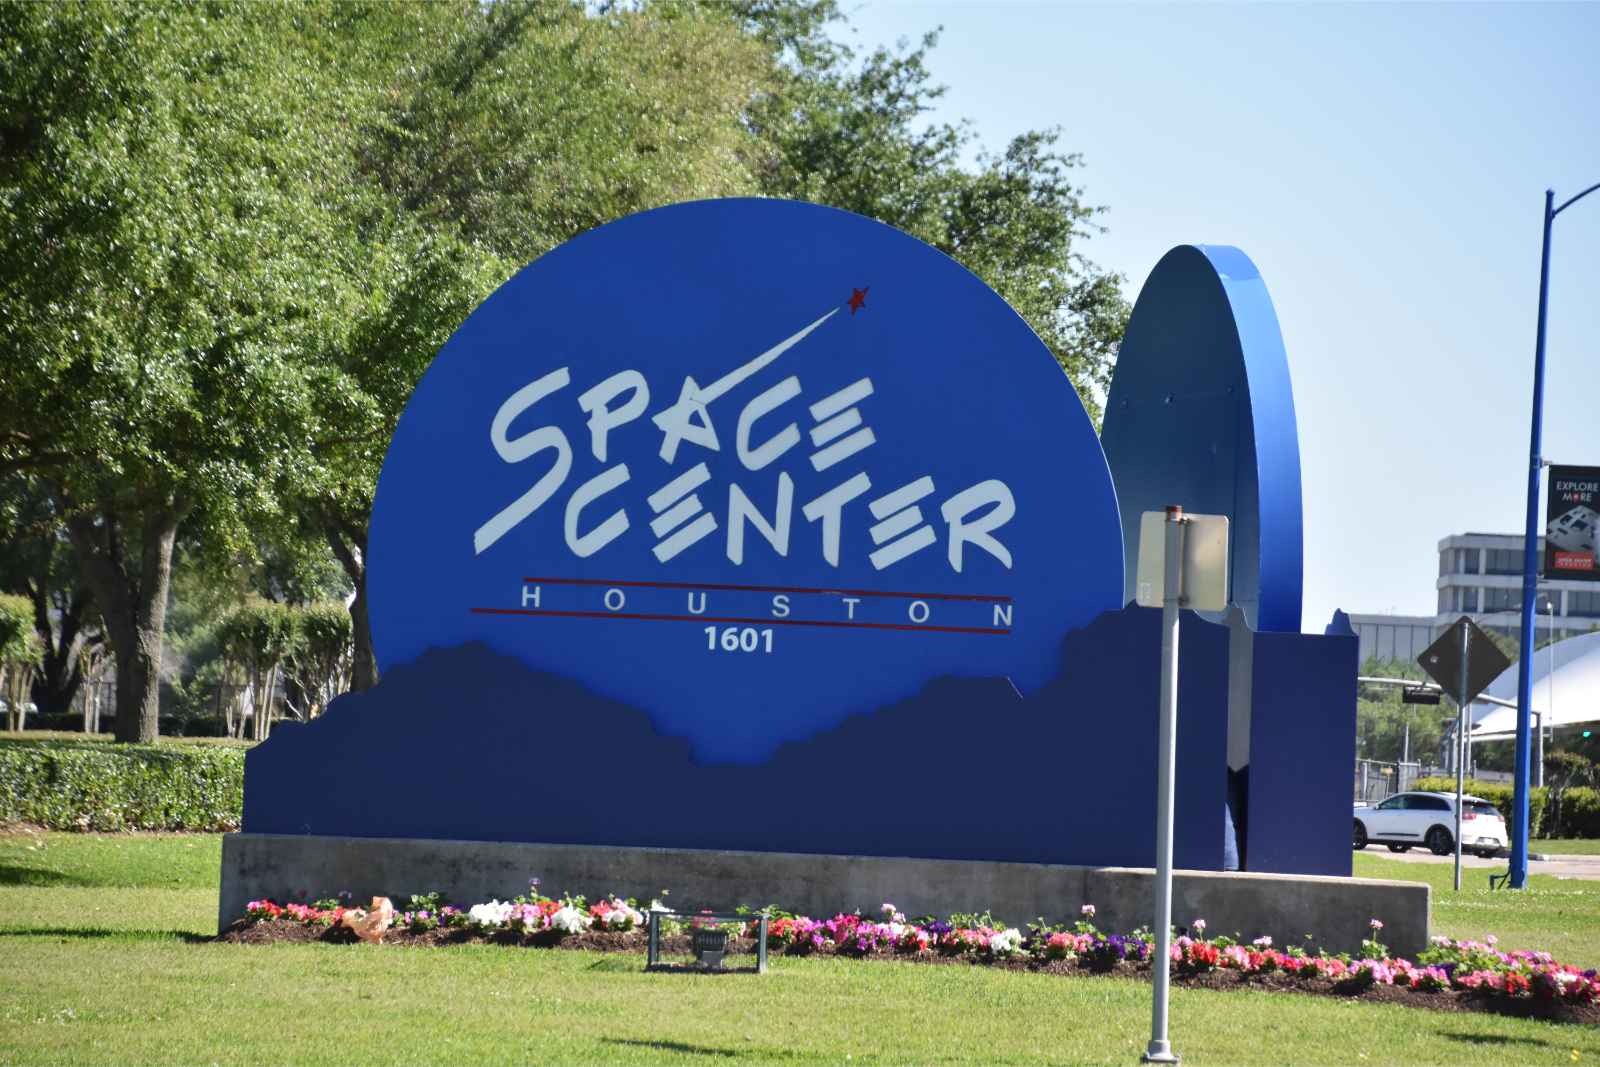 Melhores coisas para fazer no Texas NASA Space Center Houston 